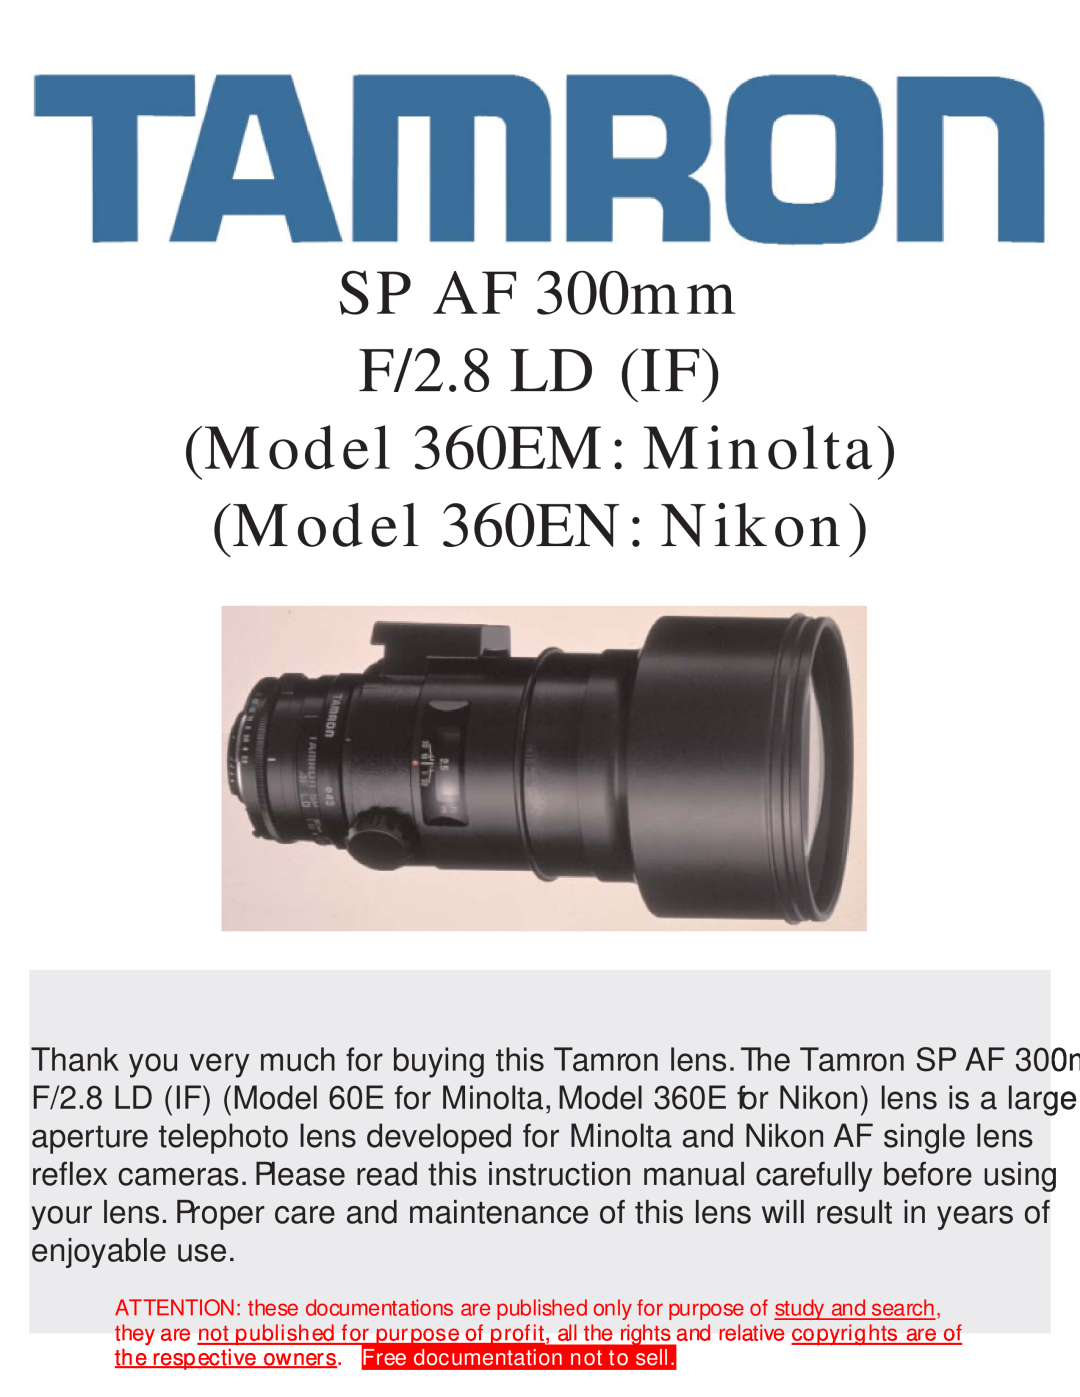 Tamron instruction manual SP AF 300mm F/2.8 LD IF Model 360EM Minolta Model 360EN Nikon 